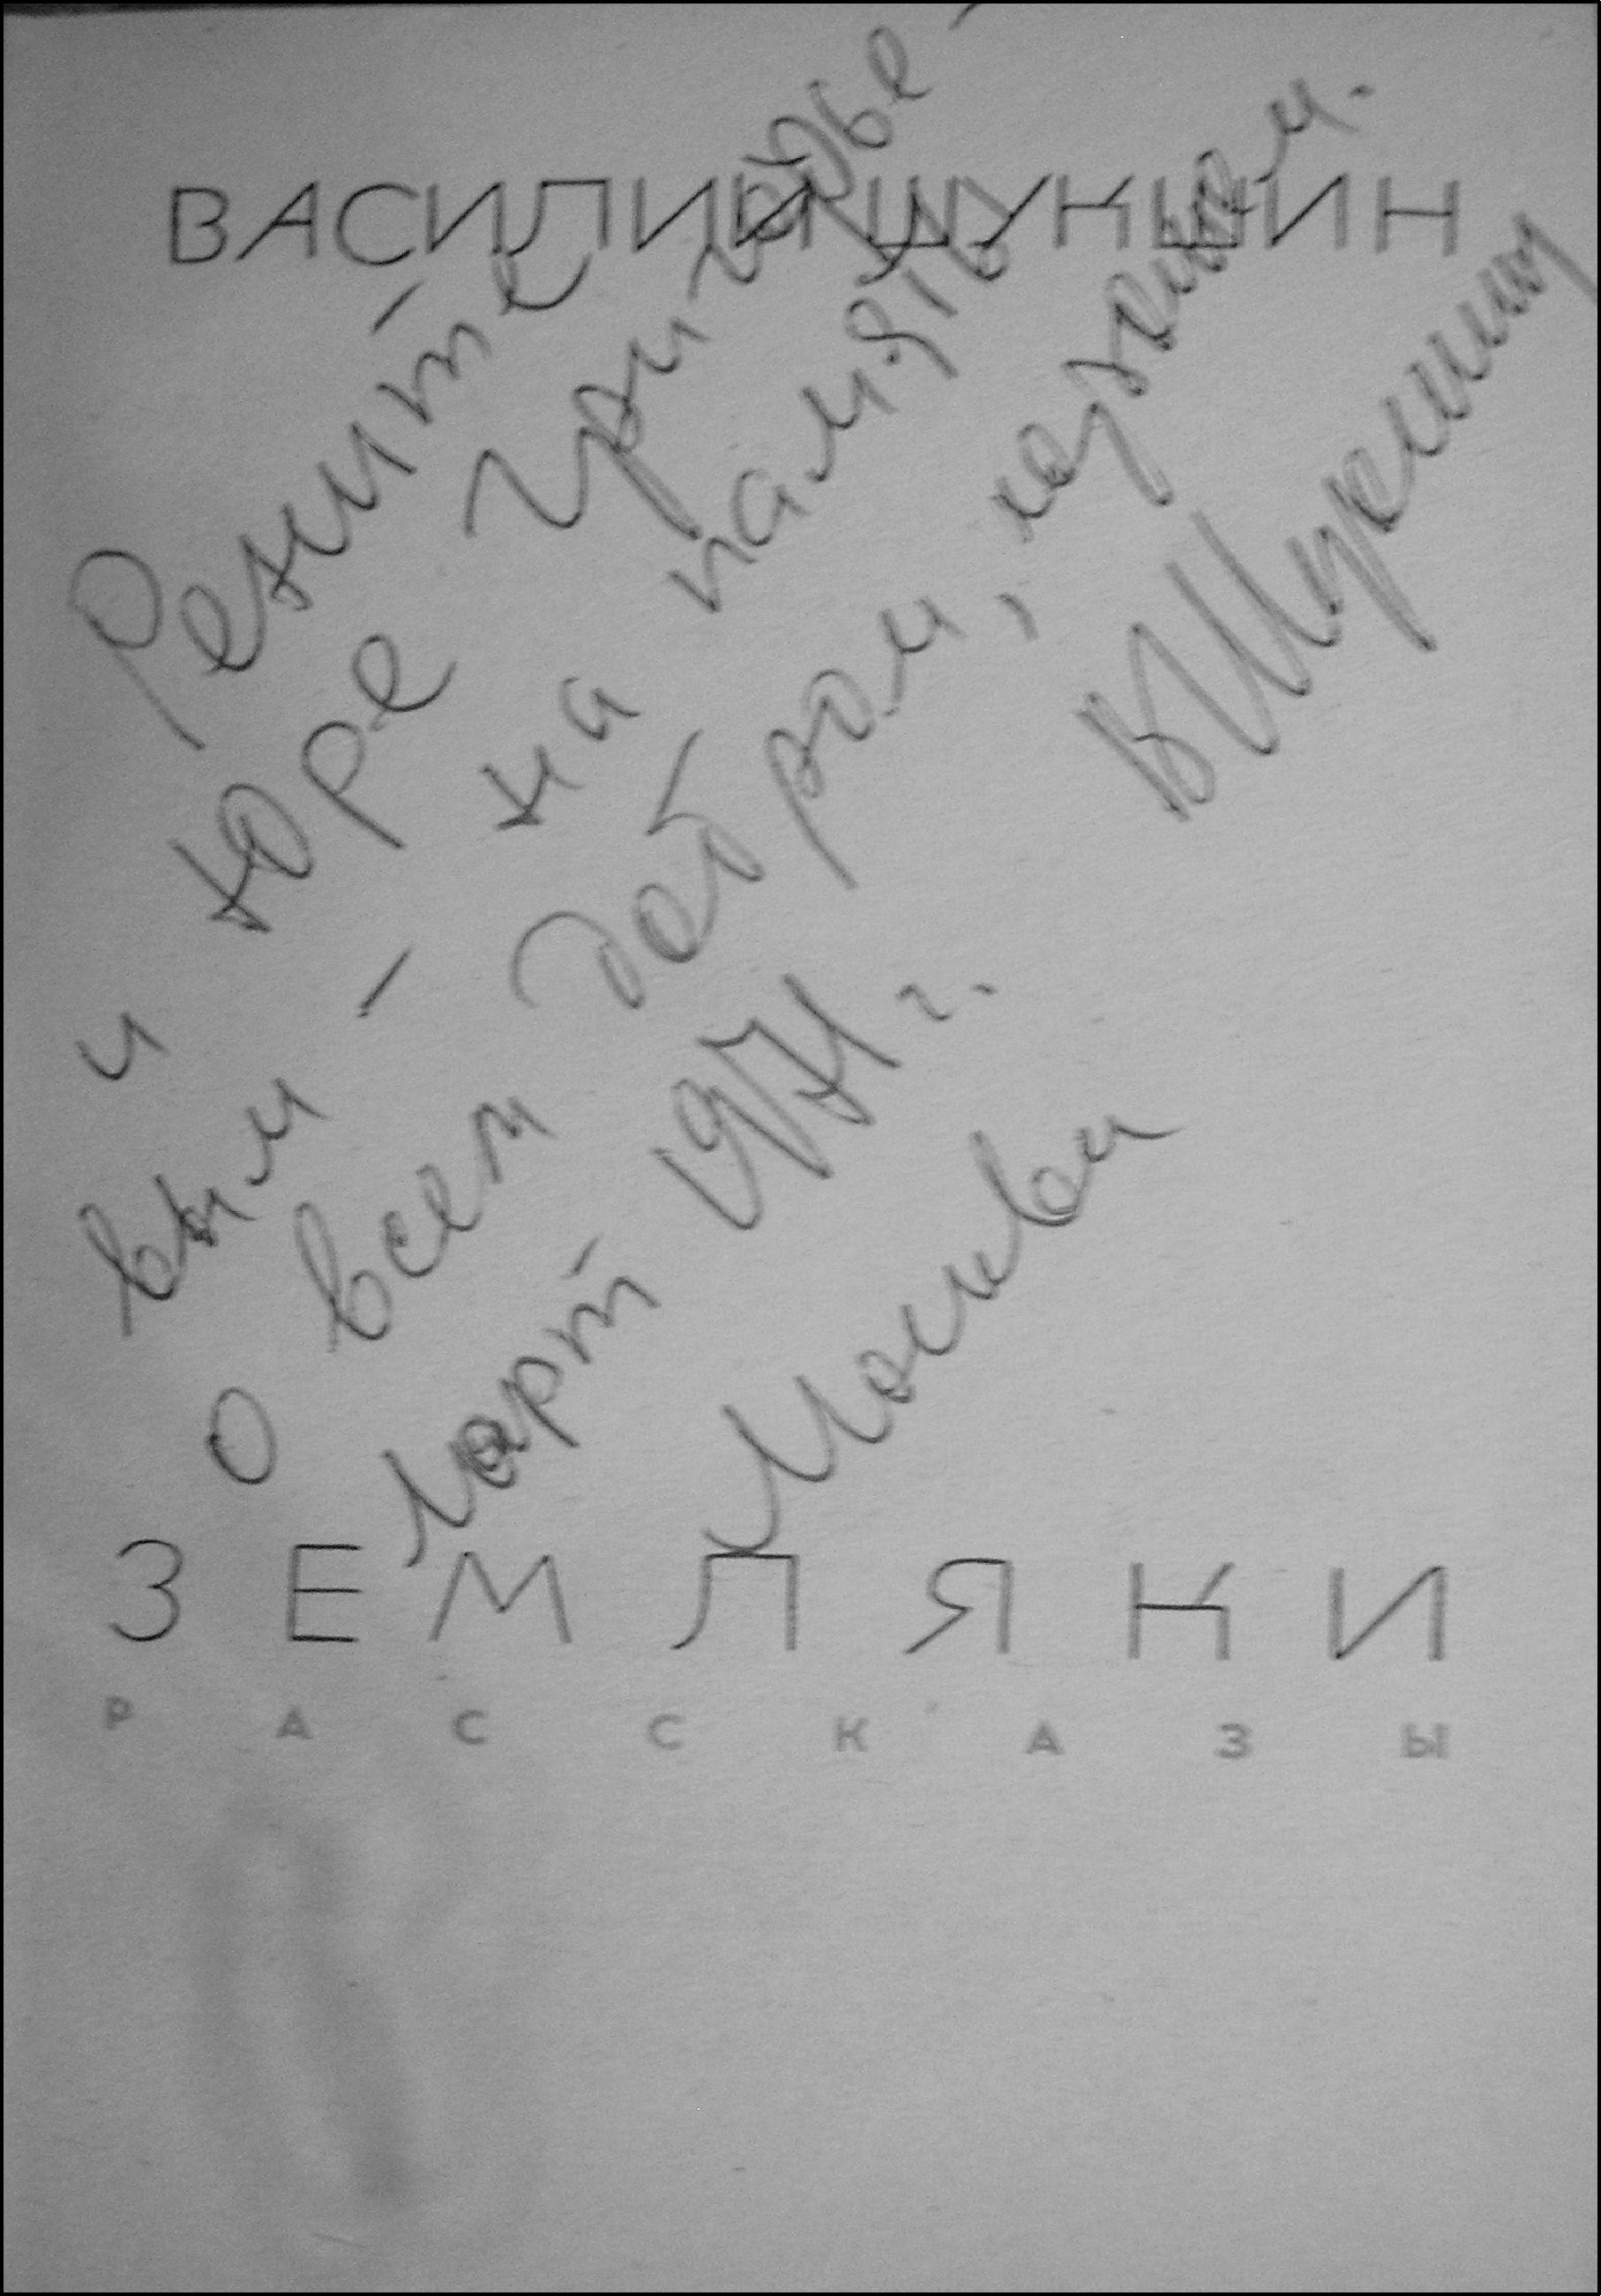 5. Автограф В.М. Шукшина на сборнике «Земляки» (1970) (фотокопия из архива автора)